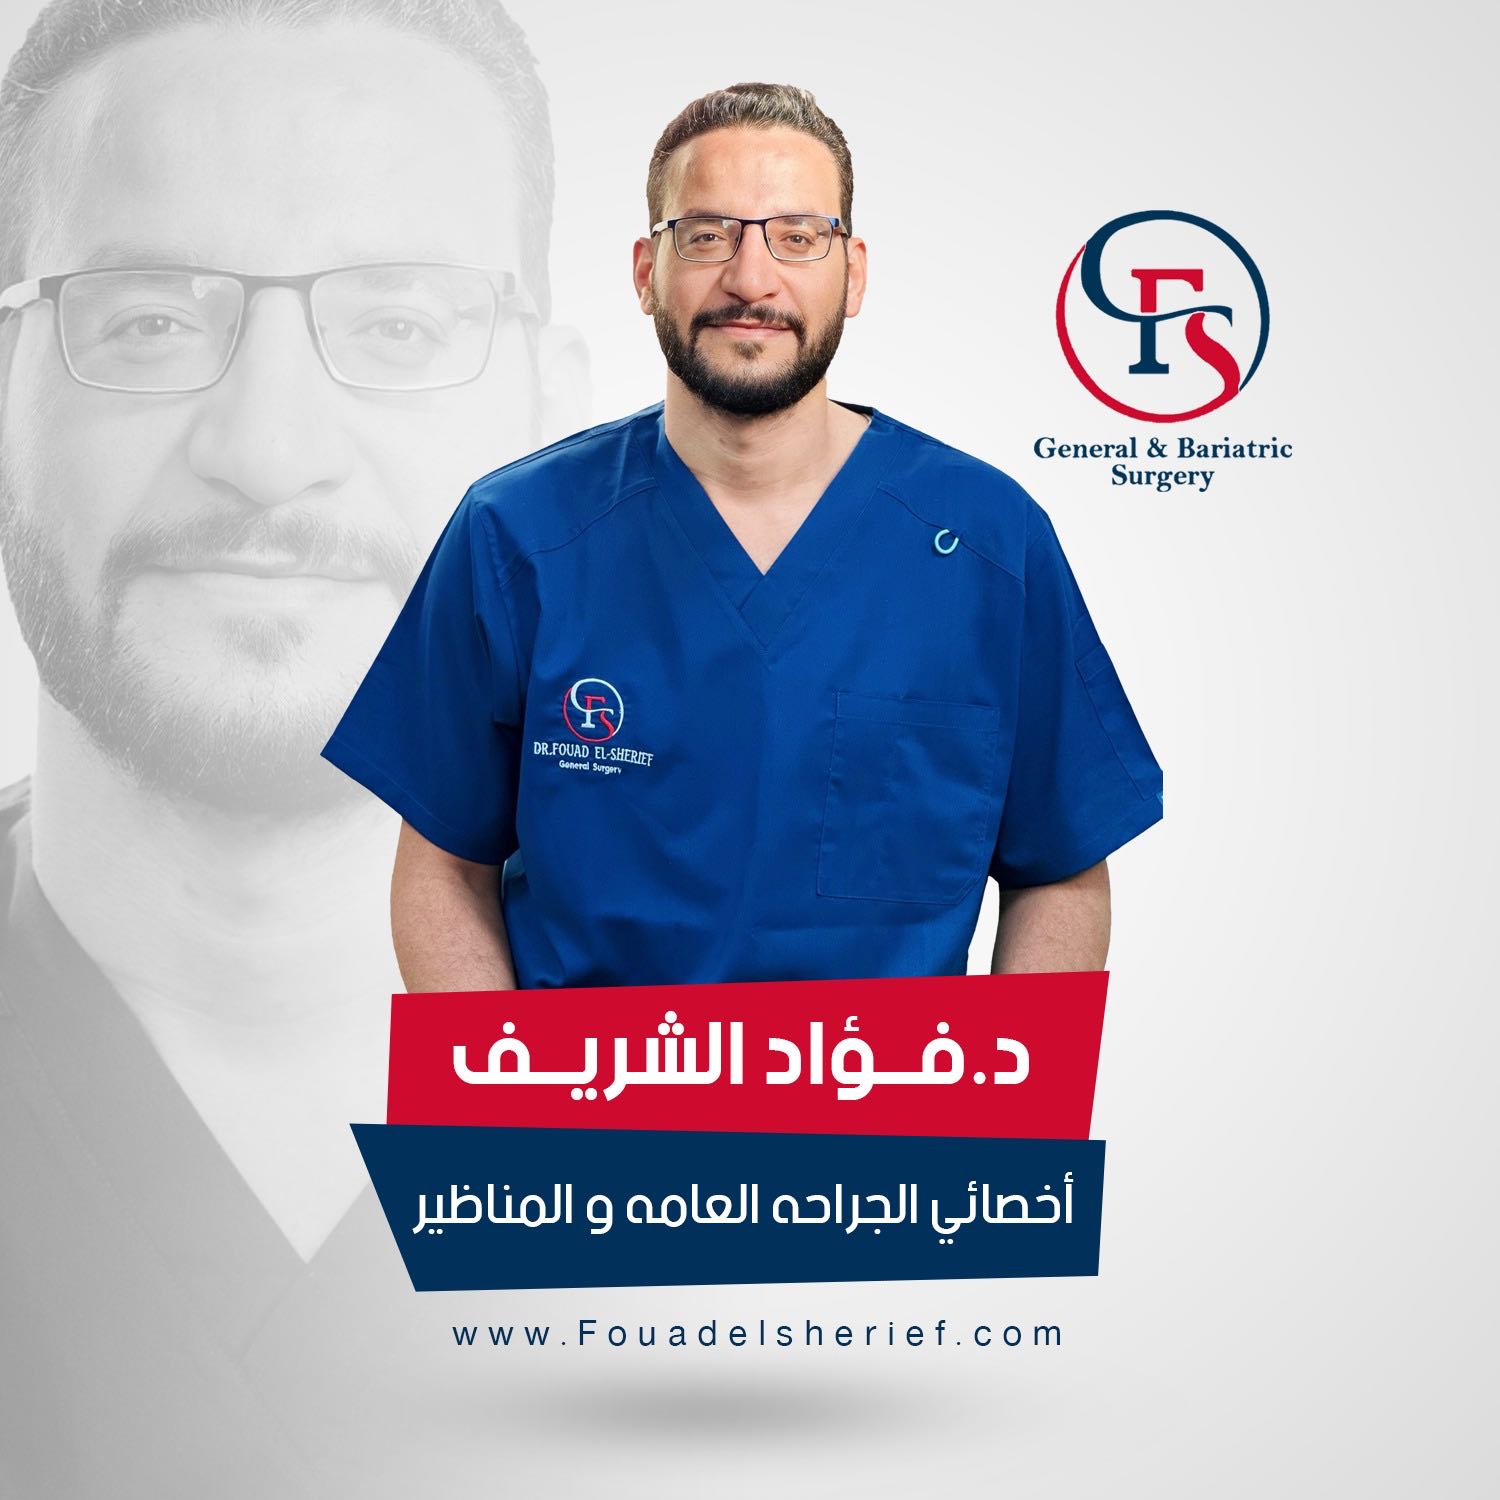 Dr. Fouad ElSherief